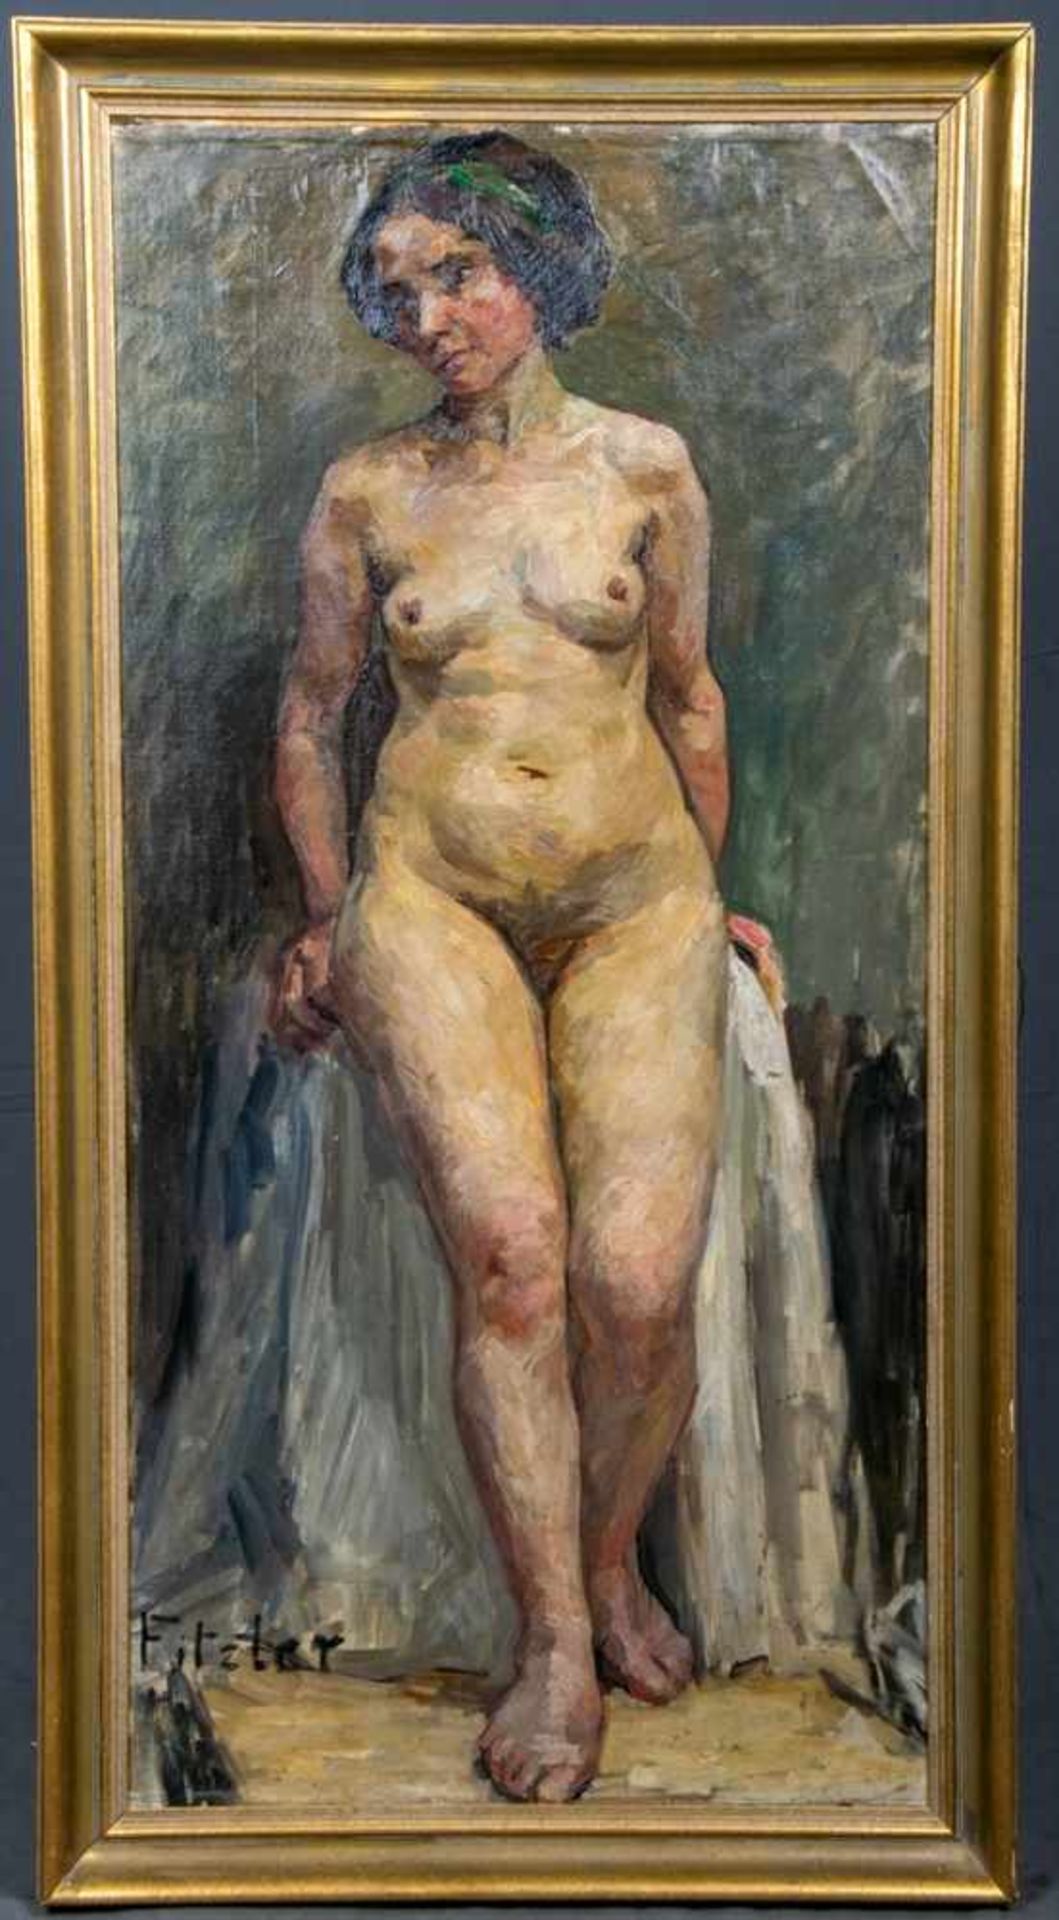 "Damenakt", klassischer Studioakt, ca. 117 x 57 cm, signiert: FITZLER. Akademische, deutsche